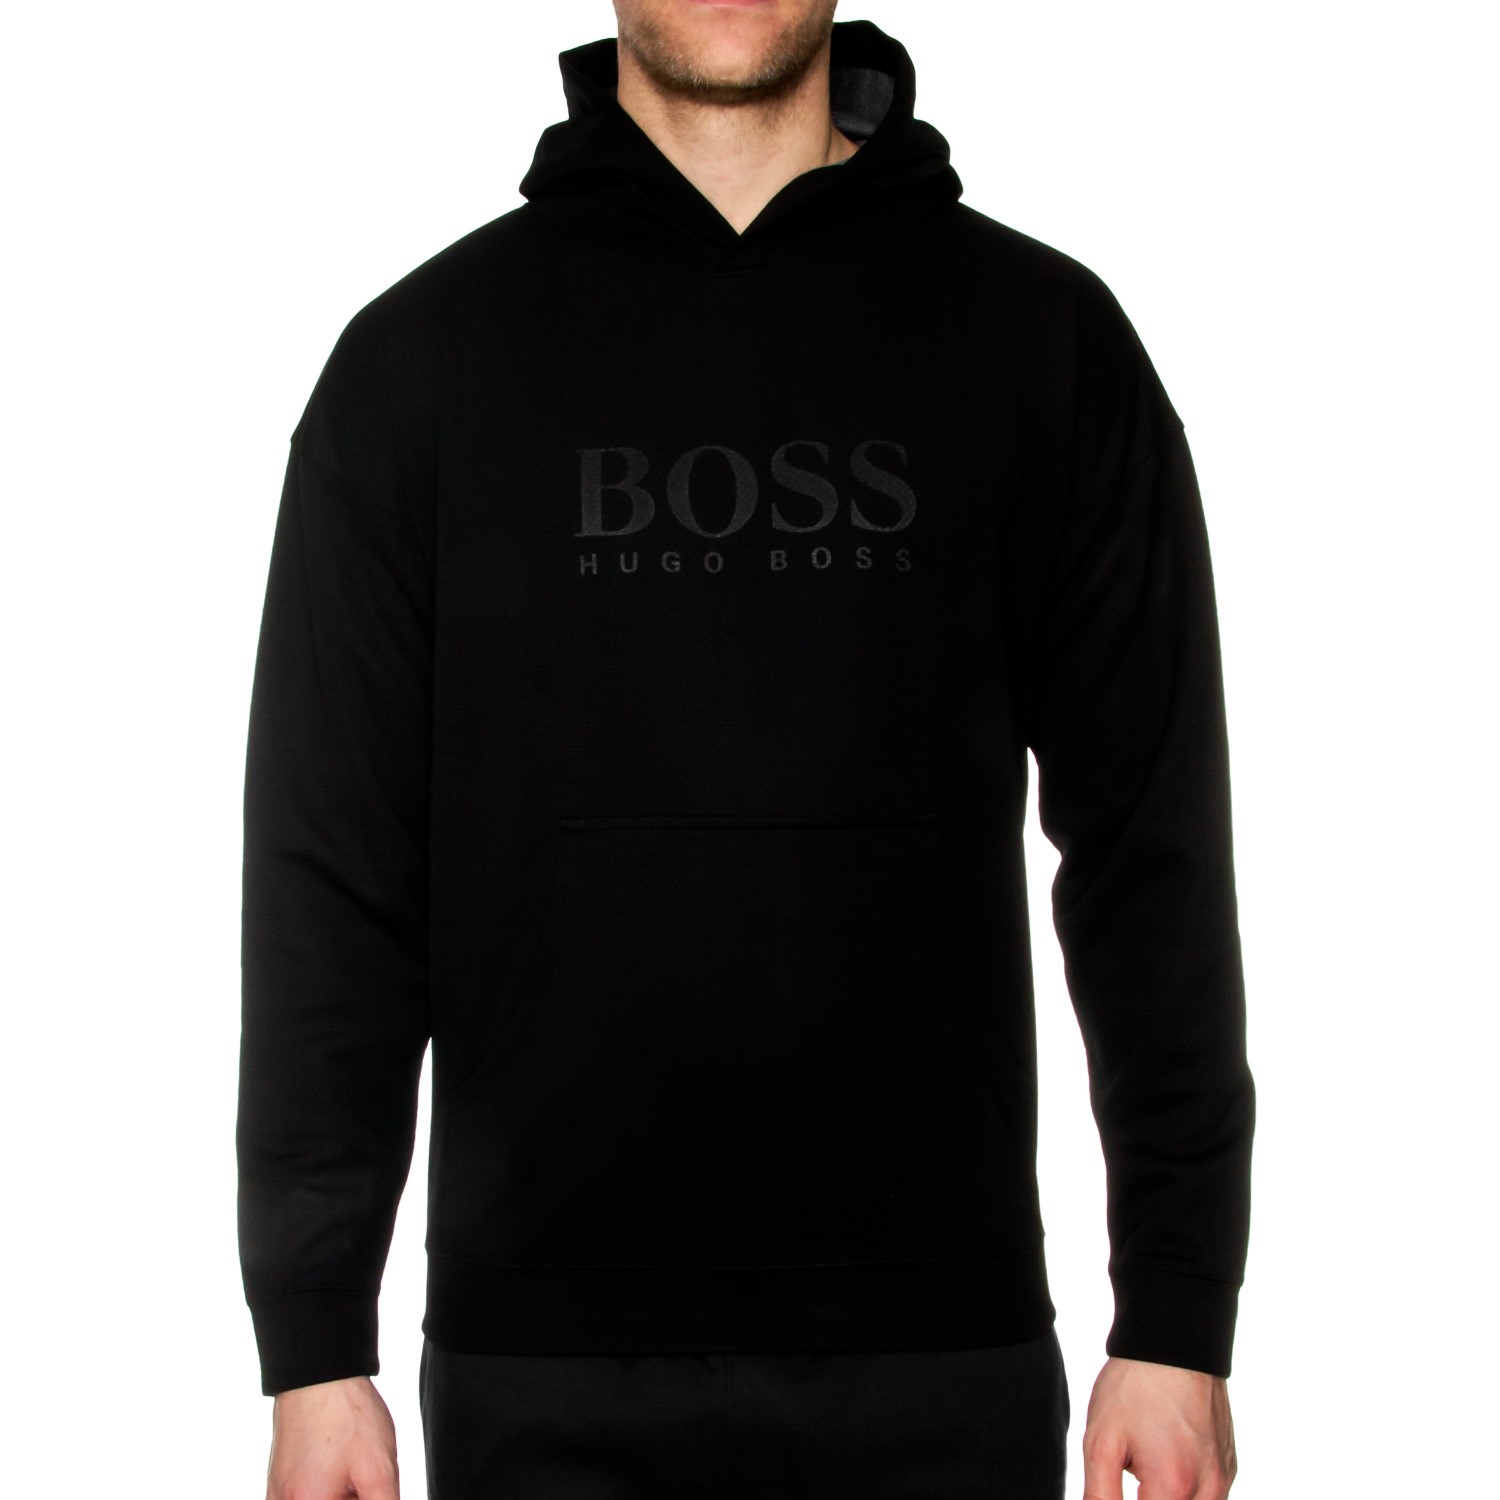 BOSS Fashion Sweatshirt Hooded